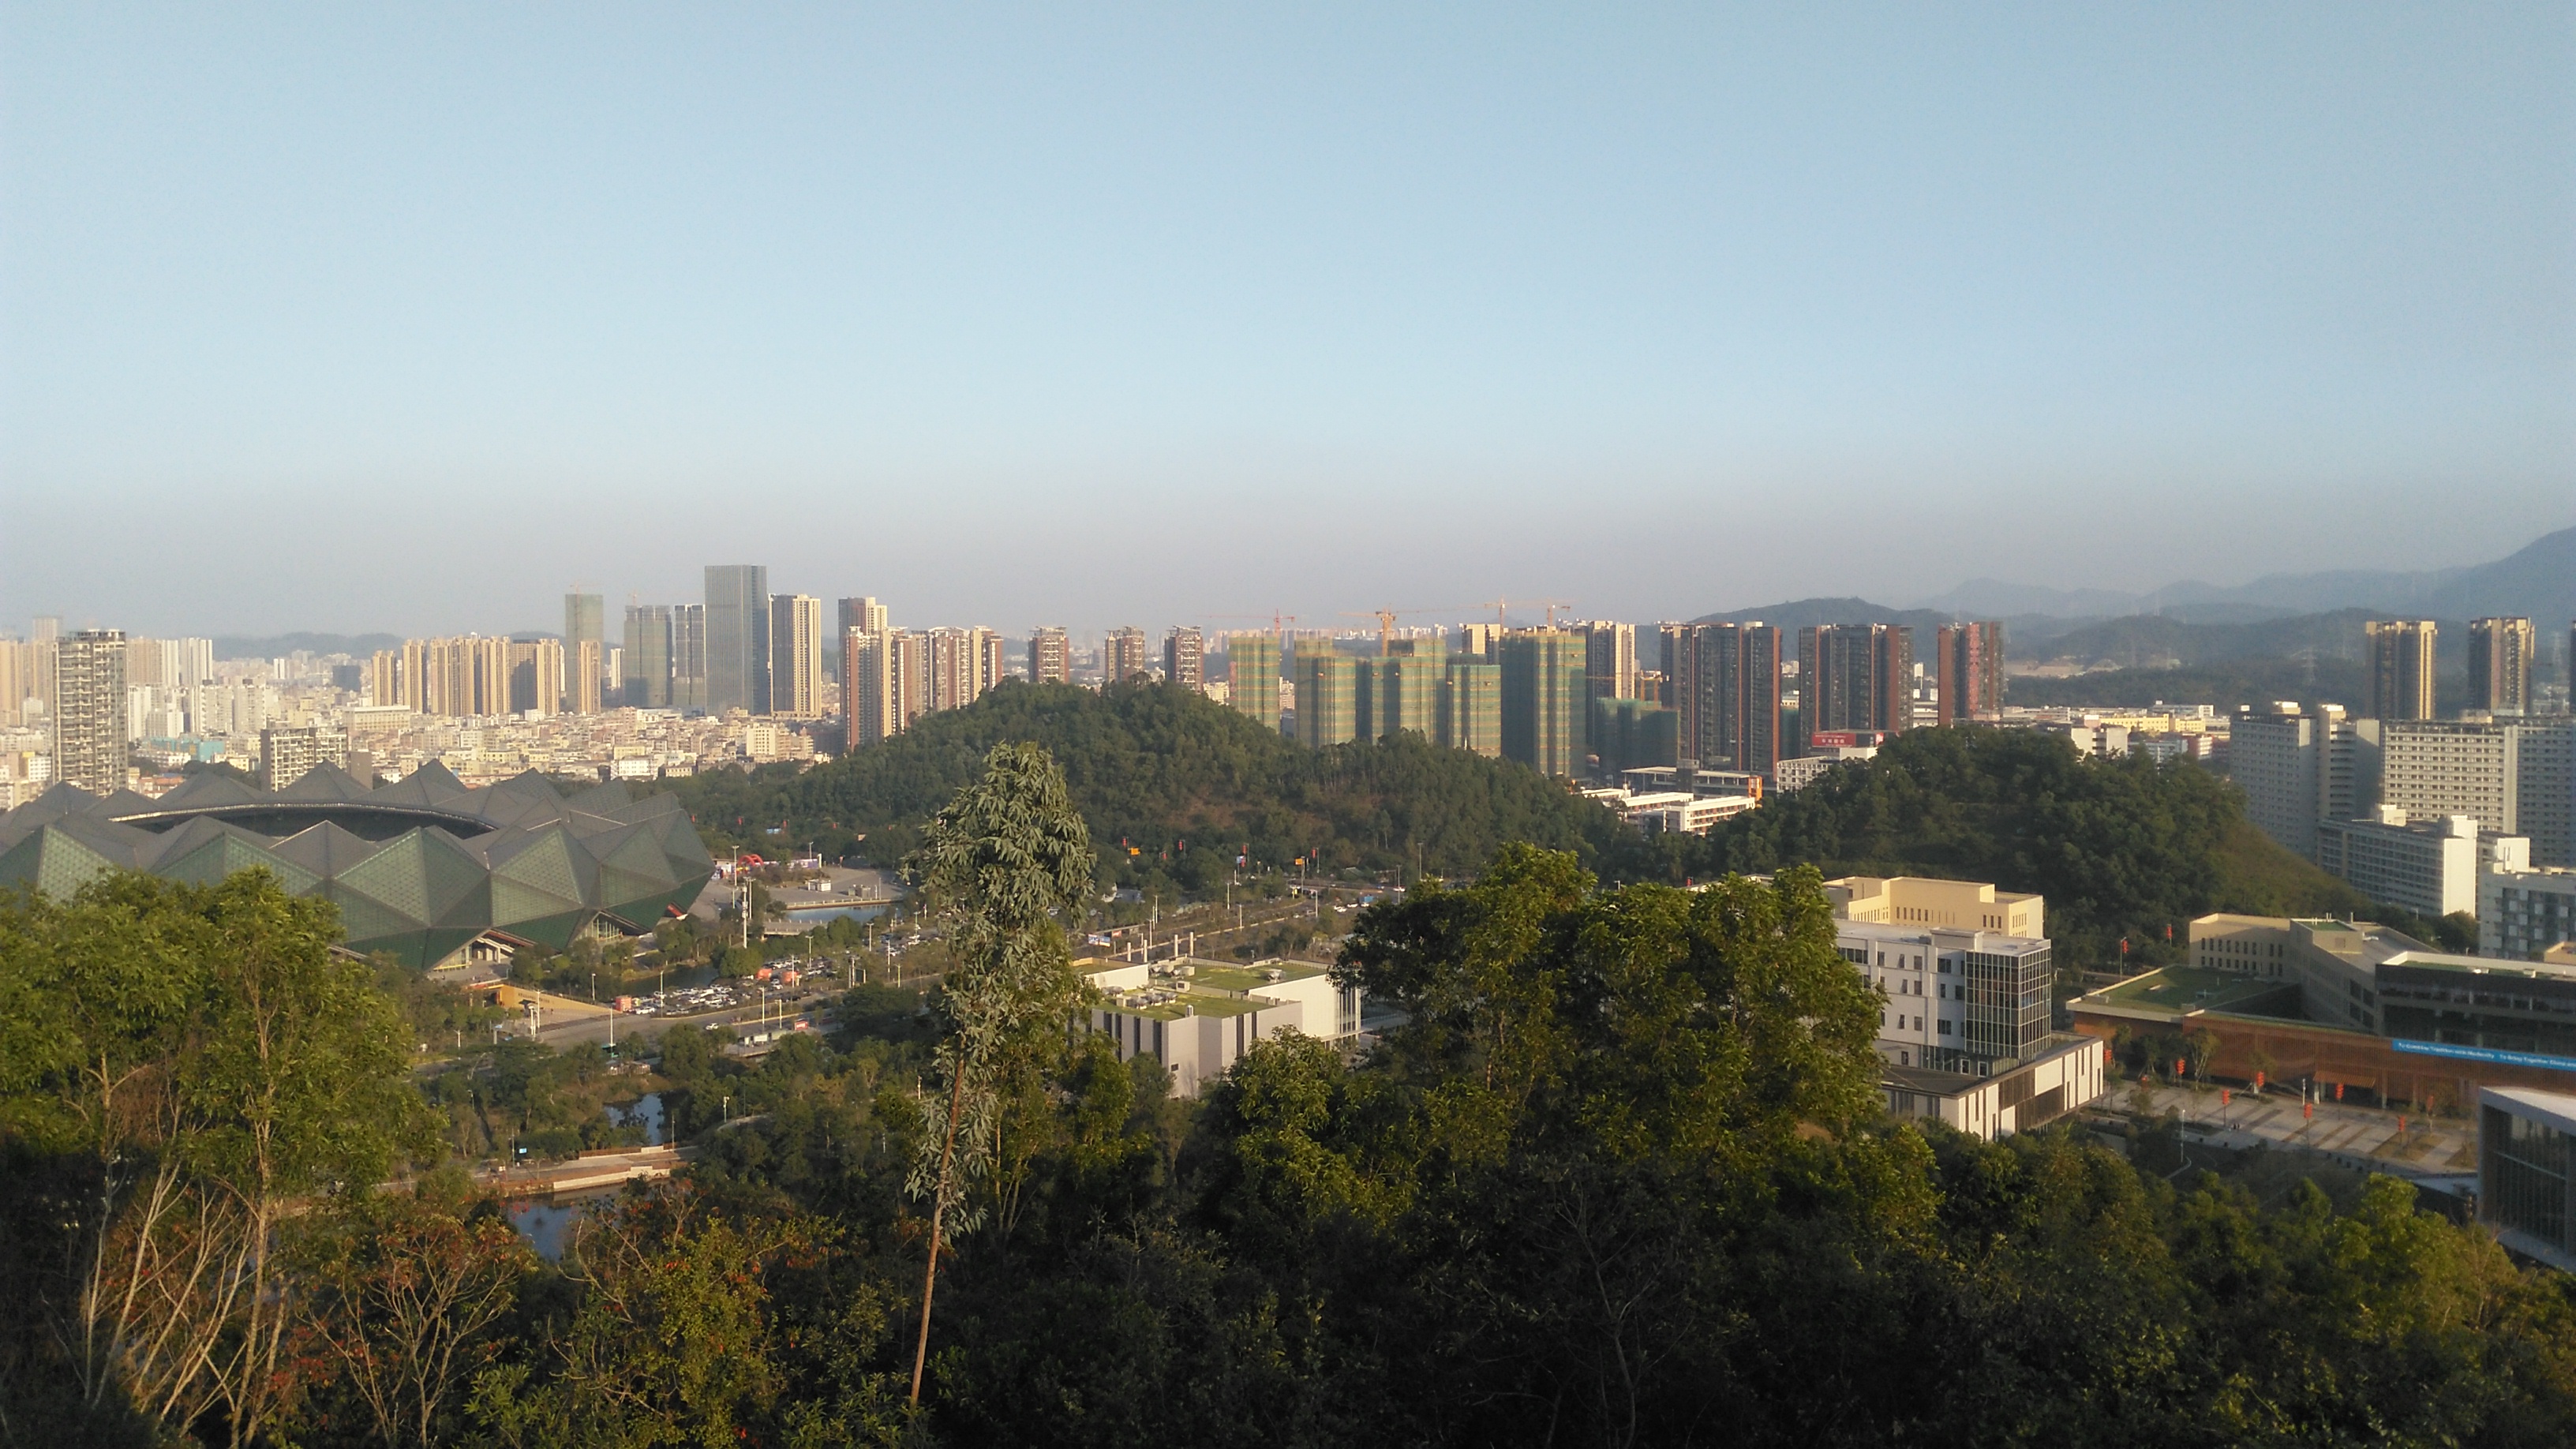 爬到深圳大运公园山顶,在最高处的观景台远眺龙岗